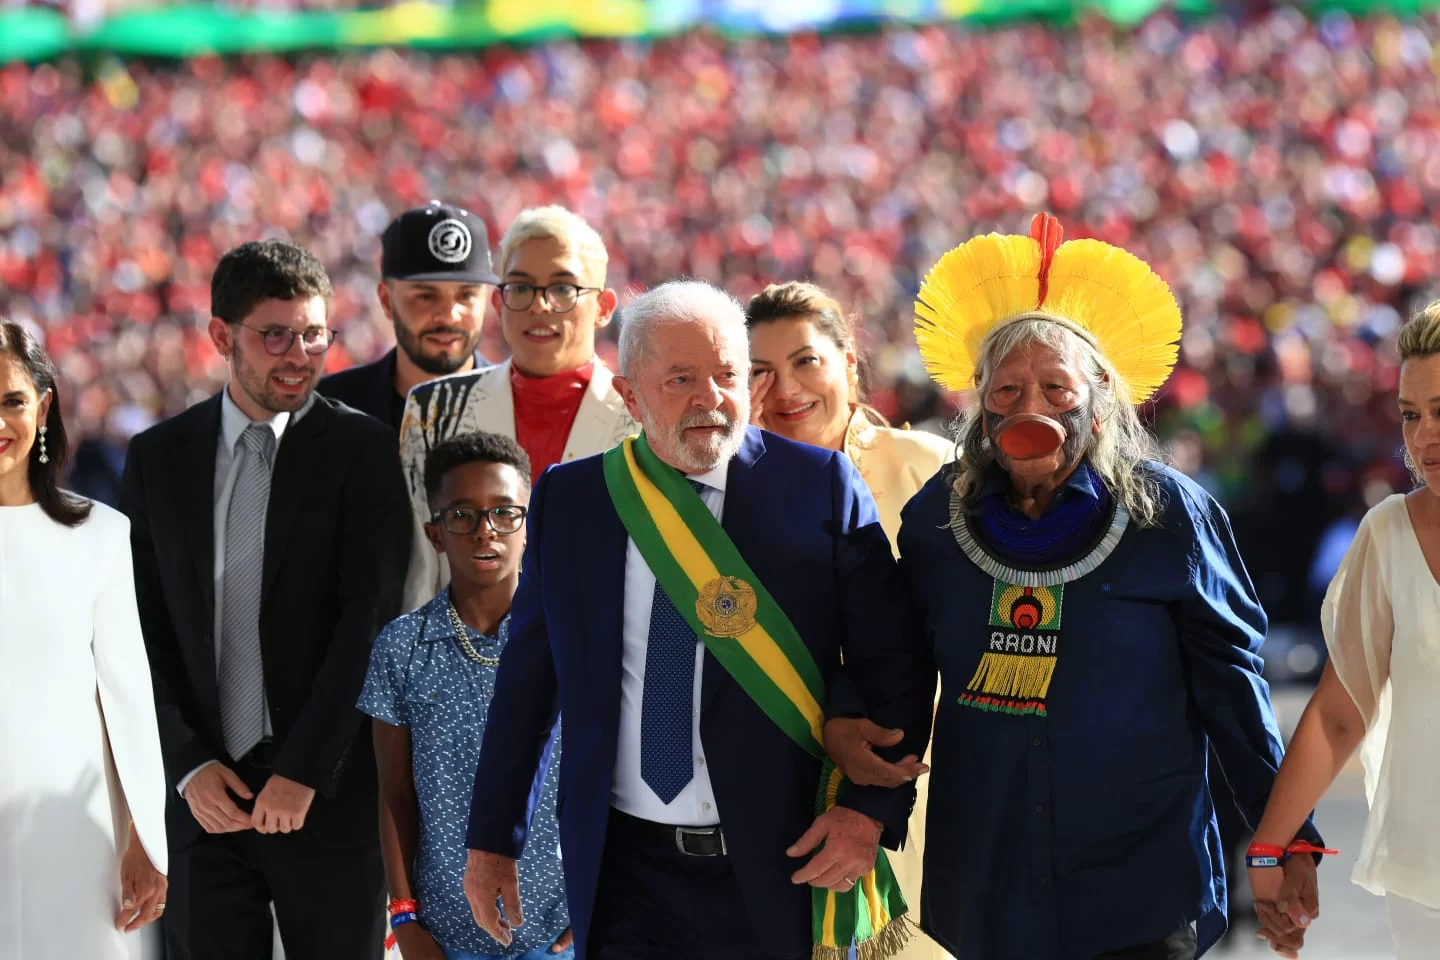 Foco do 3º governo Lula será o combate às desigualdades: 